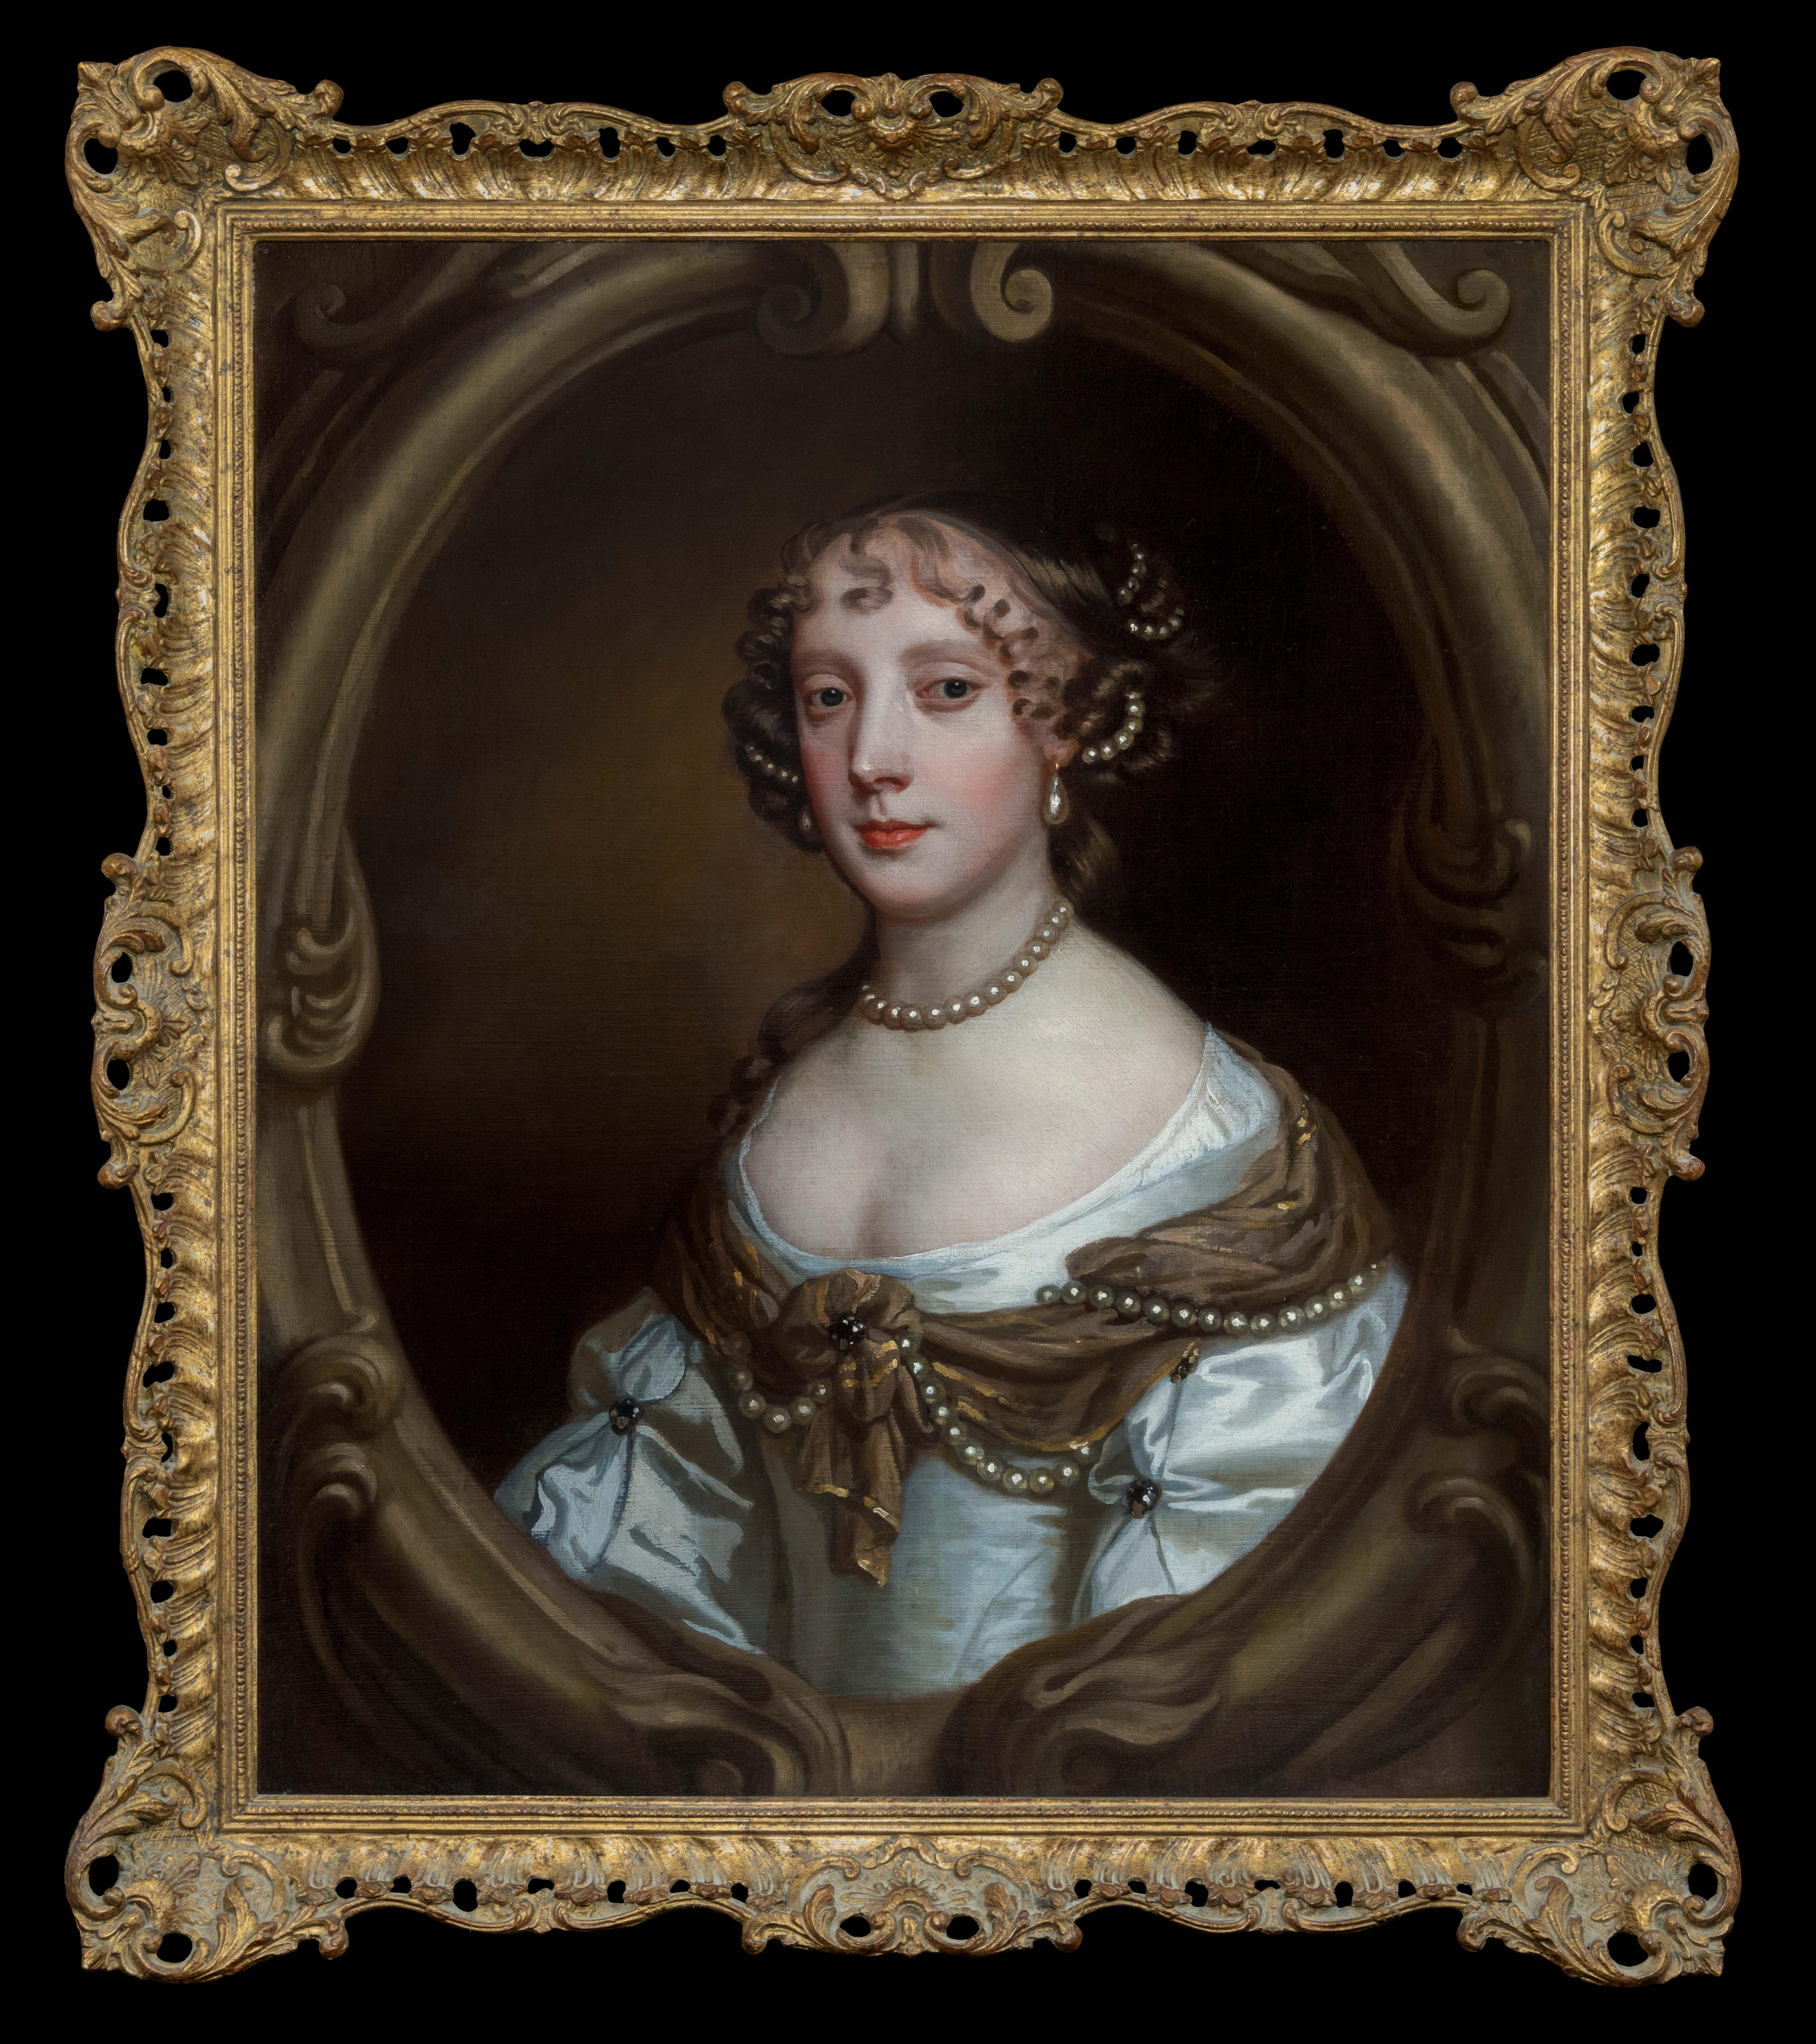 Porträt von Grace Saunderson, Viscountess Castleton (1635-1667) ca. 1665-67
Sir Peter Lely und Studio (1618-1680)

Titan Fine Art präsentiert dieses Werk, das Teil einer Sammlung von Familienbildern und Erbstücken der Familie Saunderson, Viscount